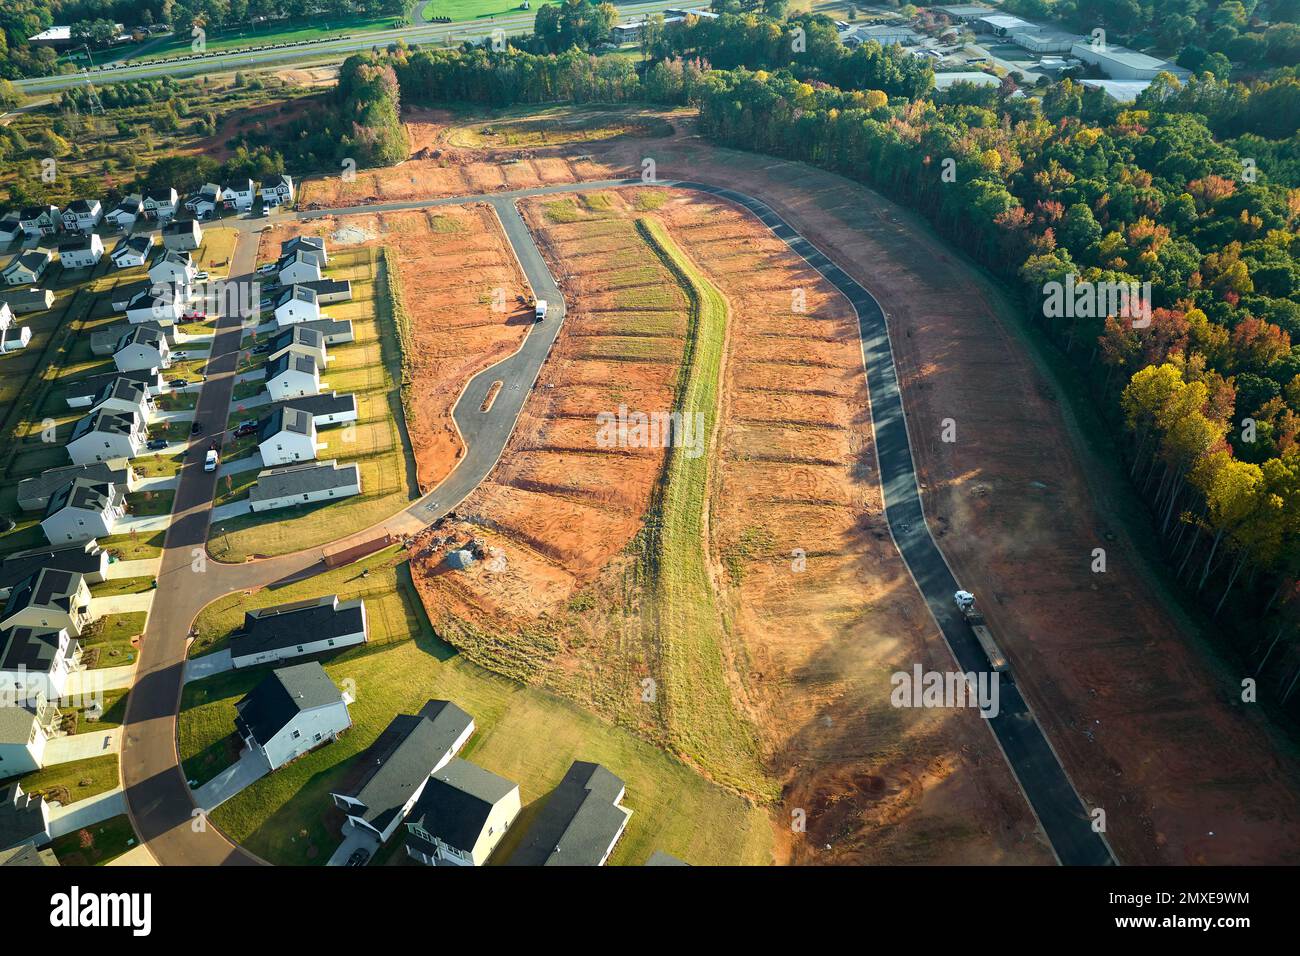 Immobilienentwicklung mit dicht gelegenen Familienhäusern, die im Vorstadtbereich von South Carolina gebaut werden. Konzept wachsender amerikanischer Vororte. Stockfoto